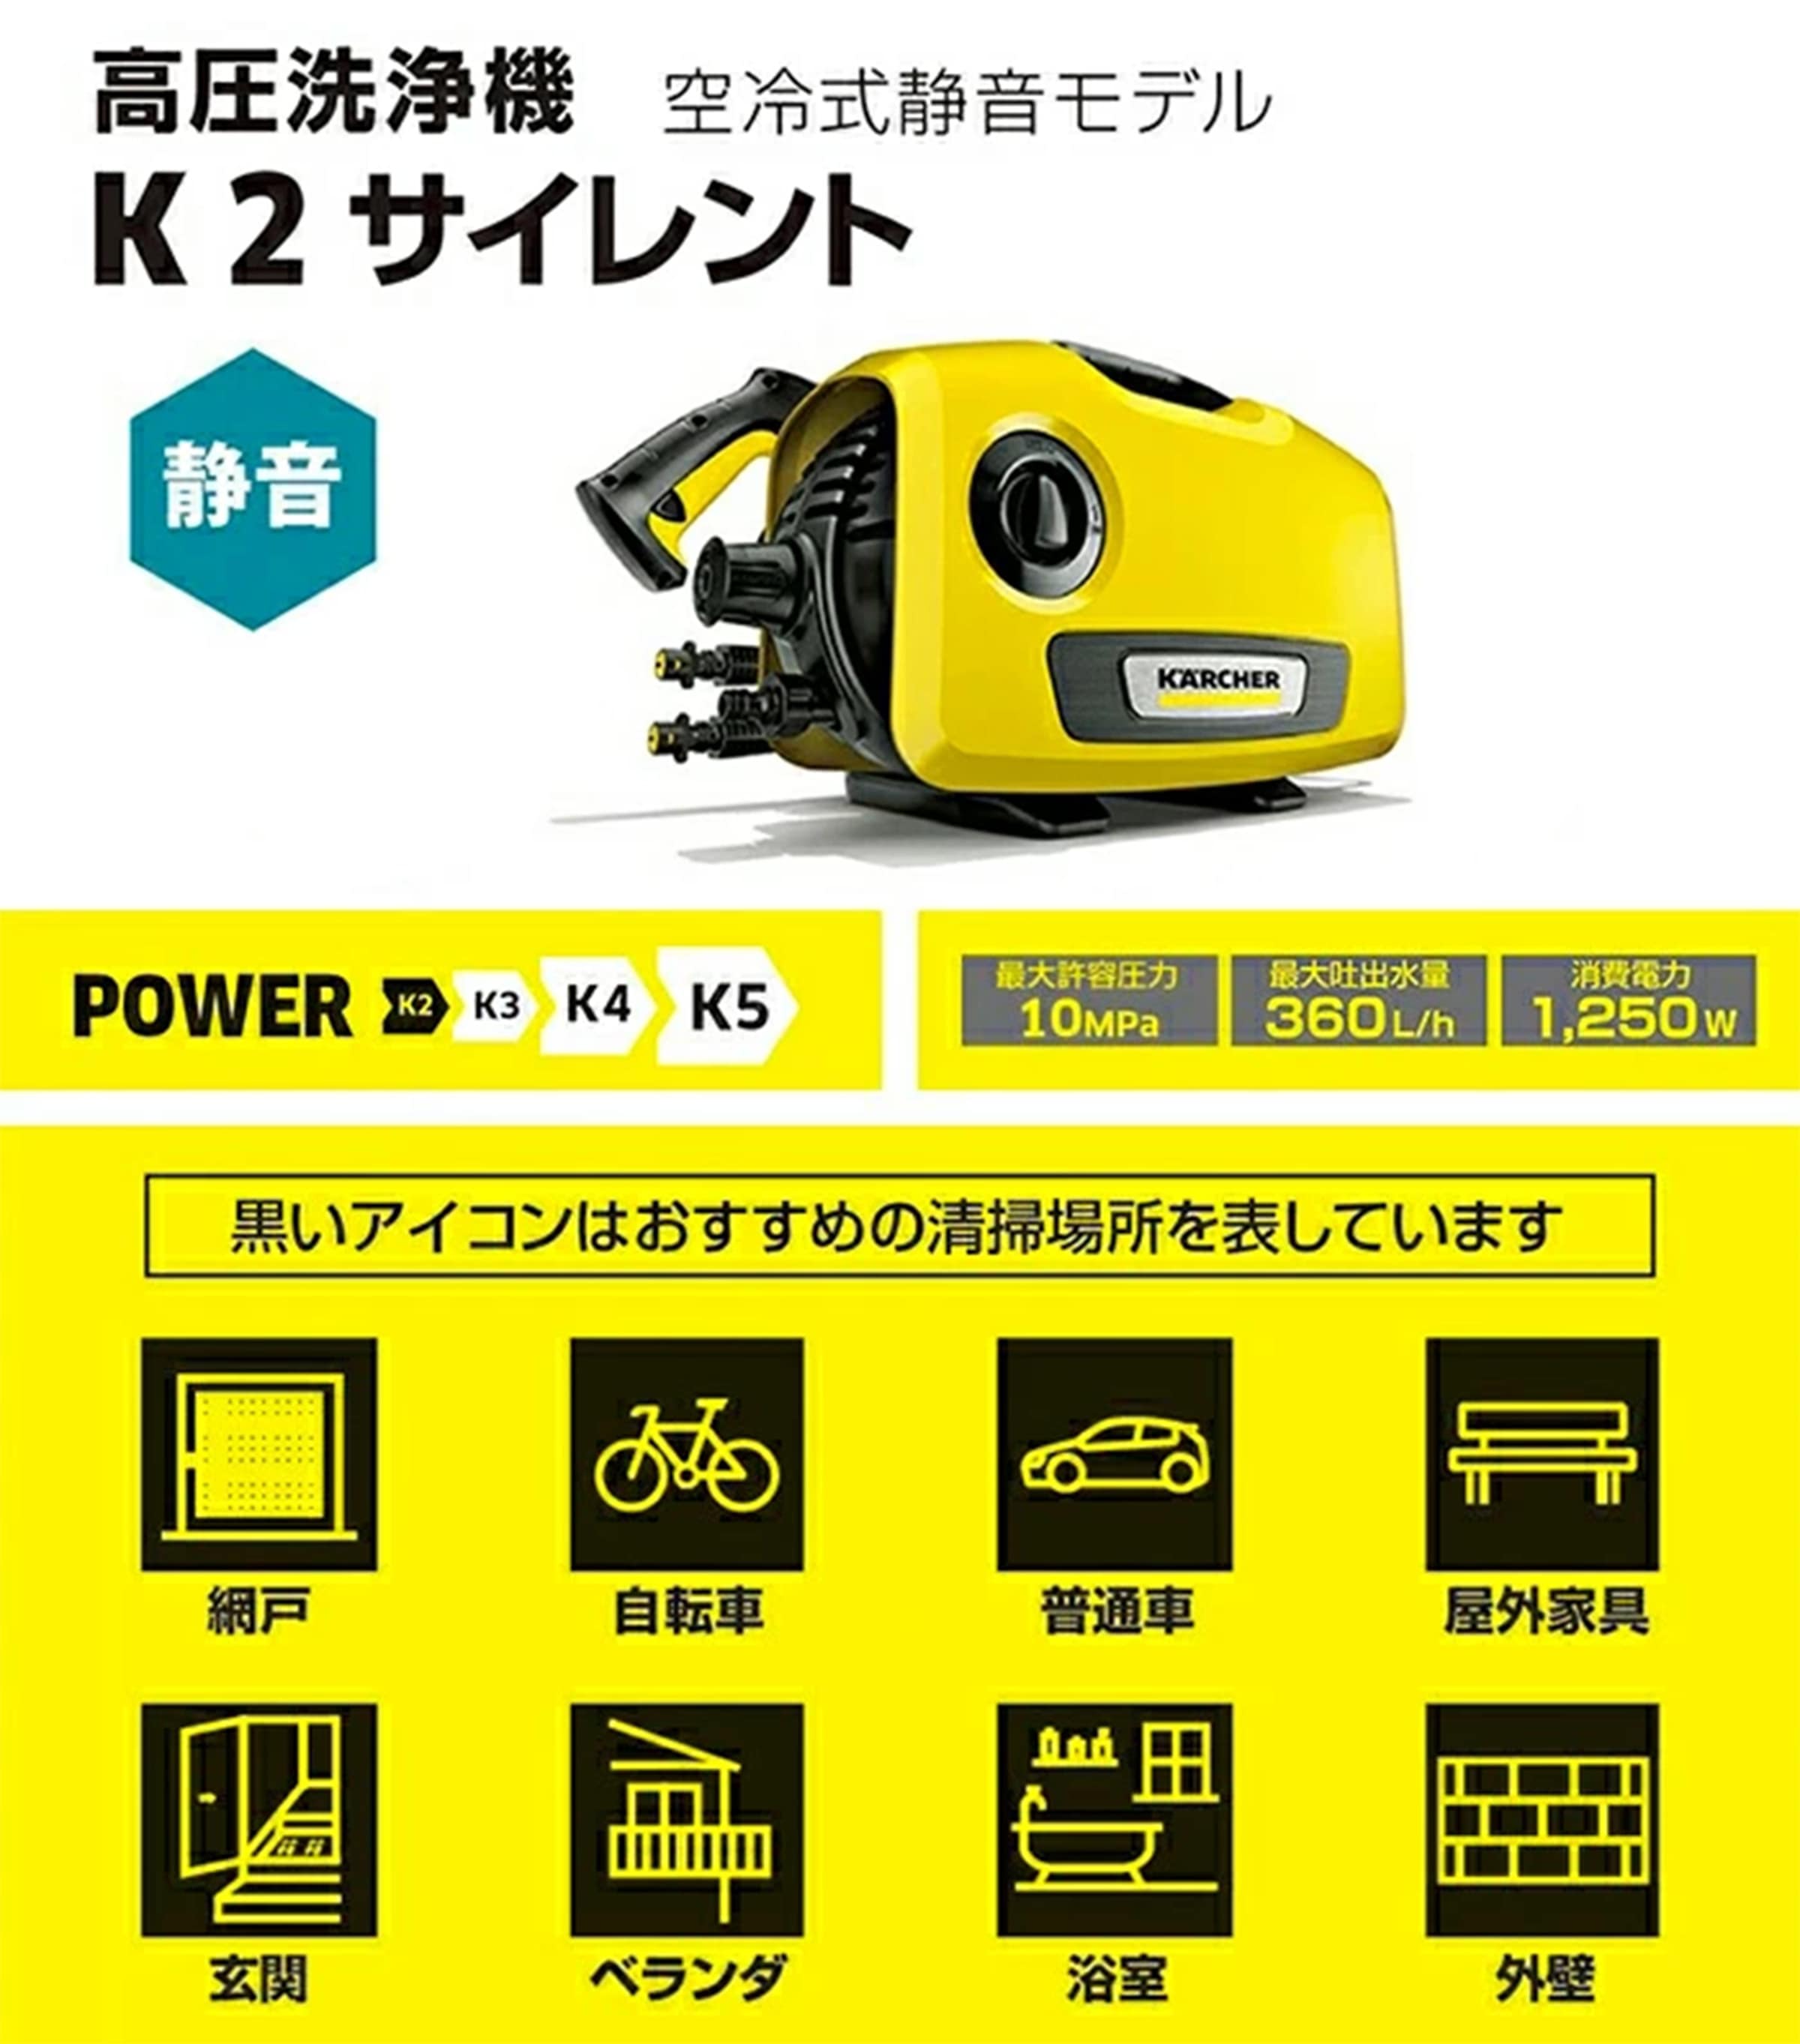 家庭用高圧洗浄機 K2サイレント 空冷式静音モデル